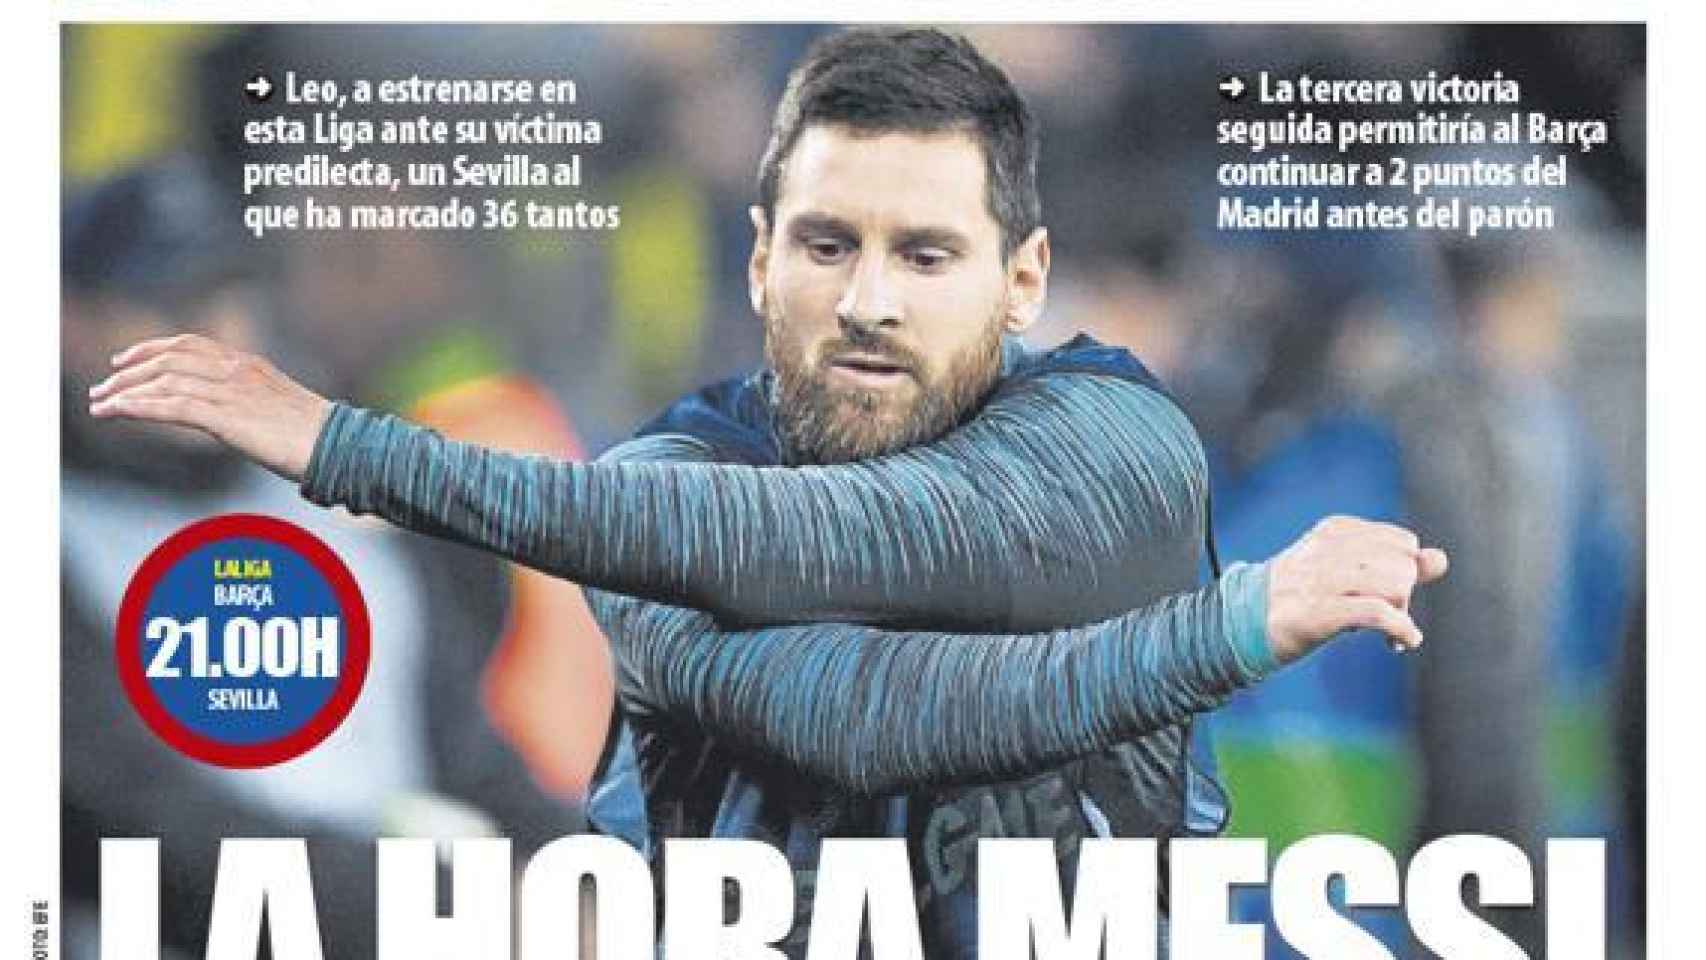 La portada del diario Mundo Deportivo (06/10/2019)